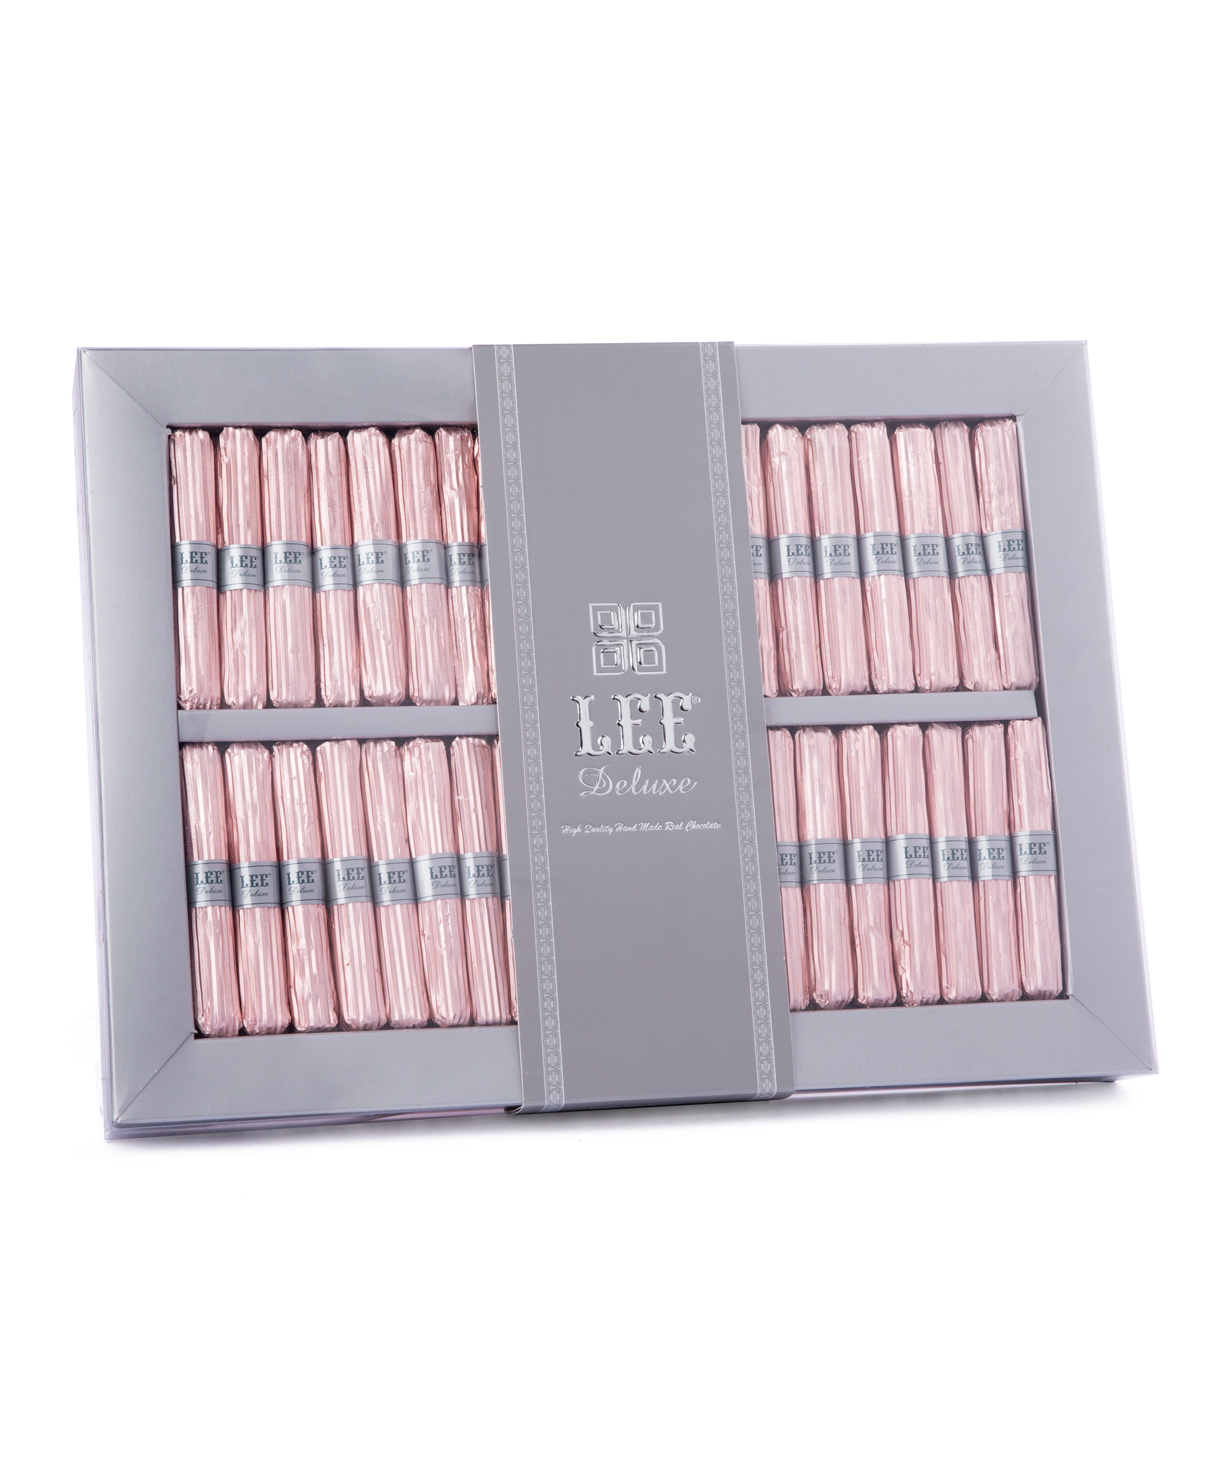 Коллекция `Lee Deluxe` шоколадных конфет 430 гр